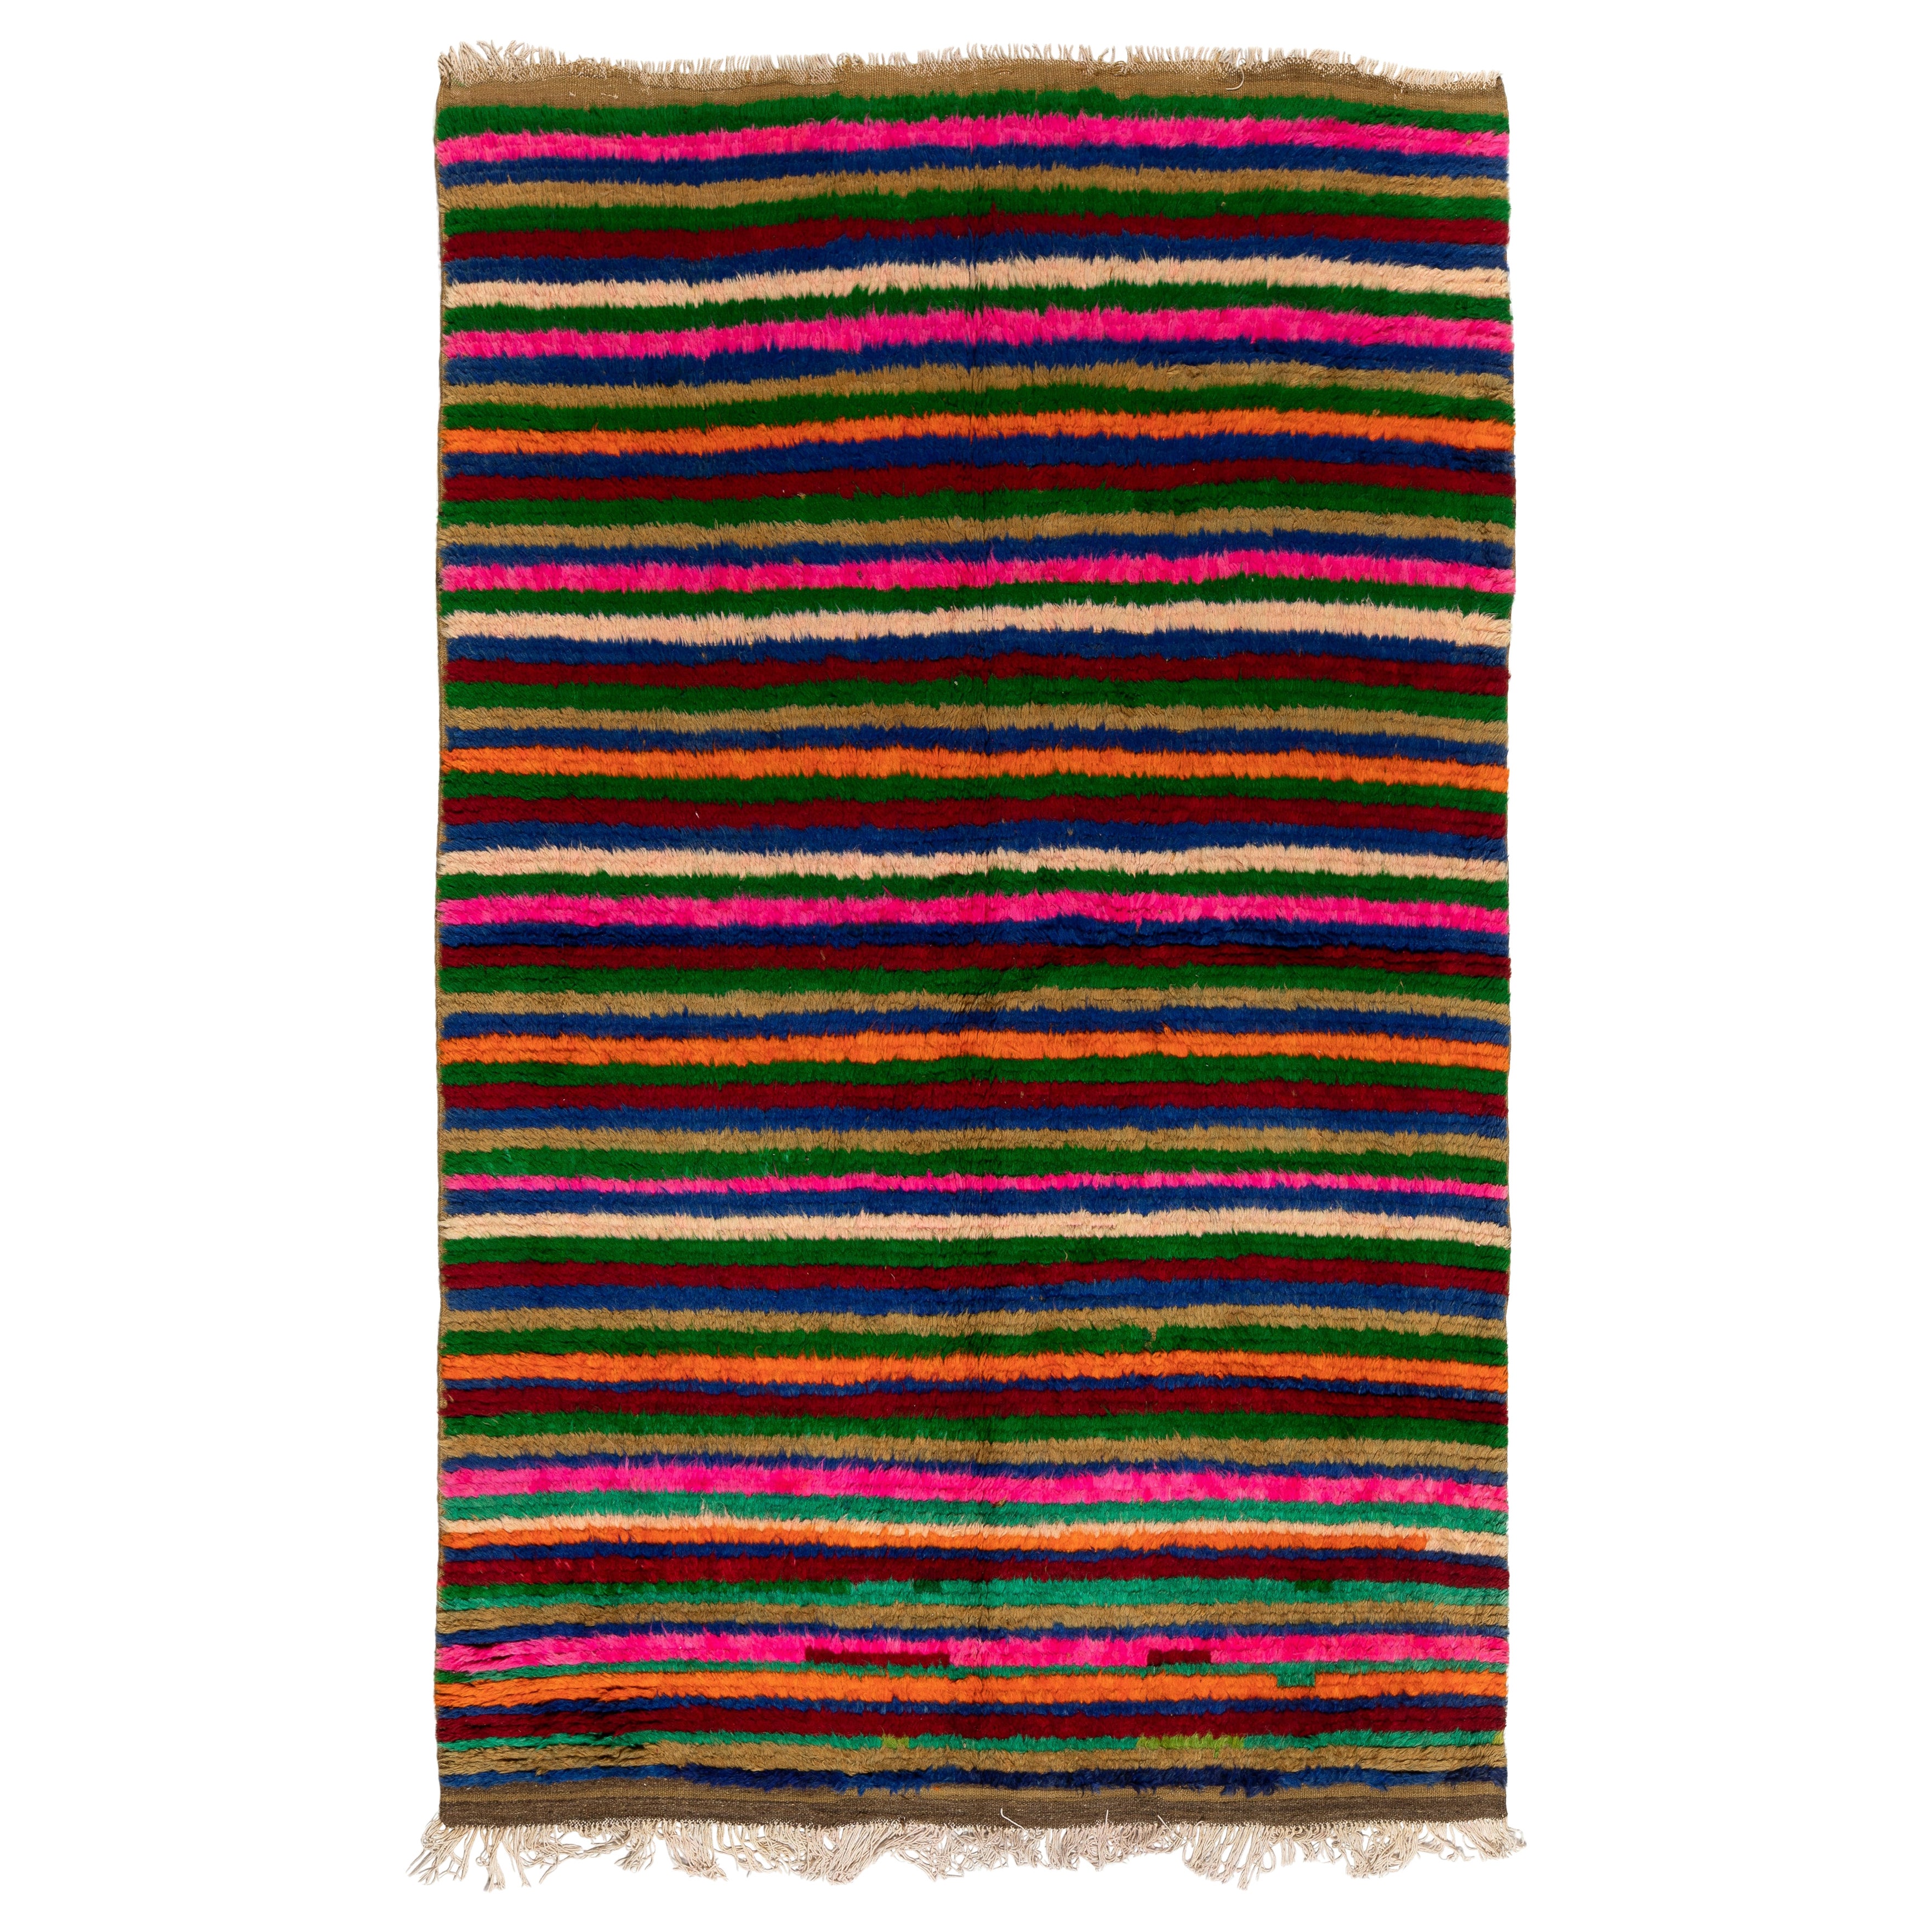 5.5x8.4 Ft Mehrfarbiger handgefertigter türkischer Tulu-Teppich mit Bändern im Vintage-Stil, weicher Wollflor